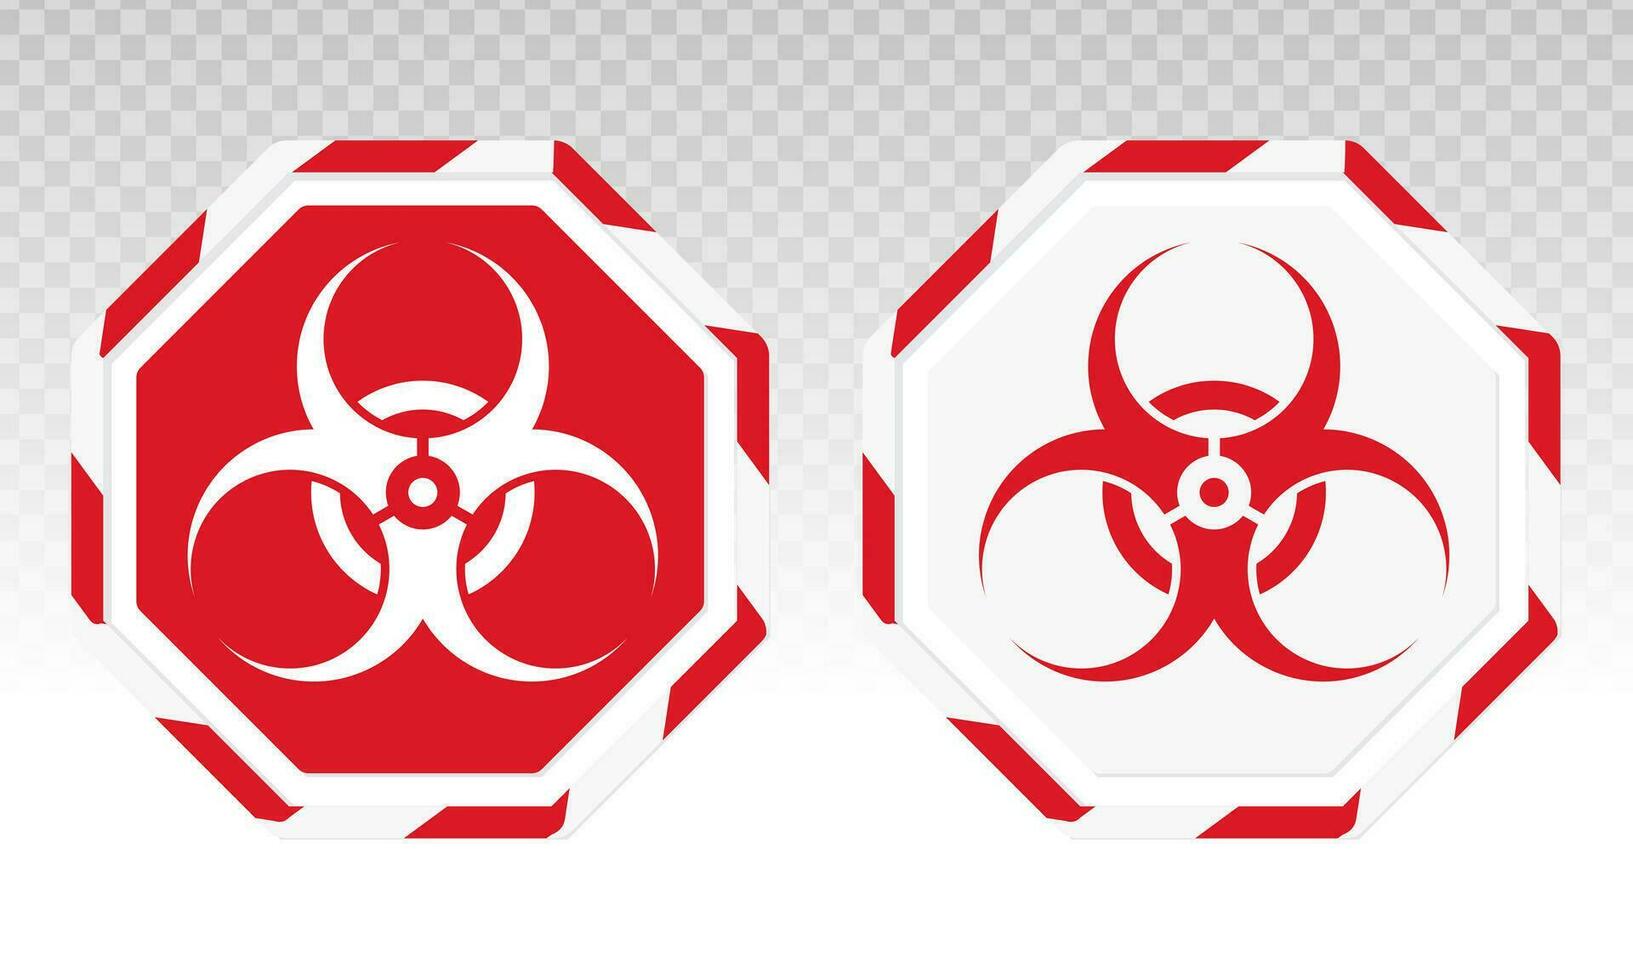 rischio biologico o biologico rischio avvertimento cartello o simbolo piatto vettore icona per applicazioni e siti web